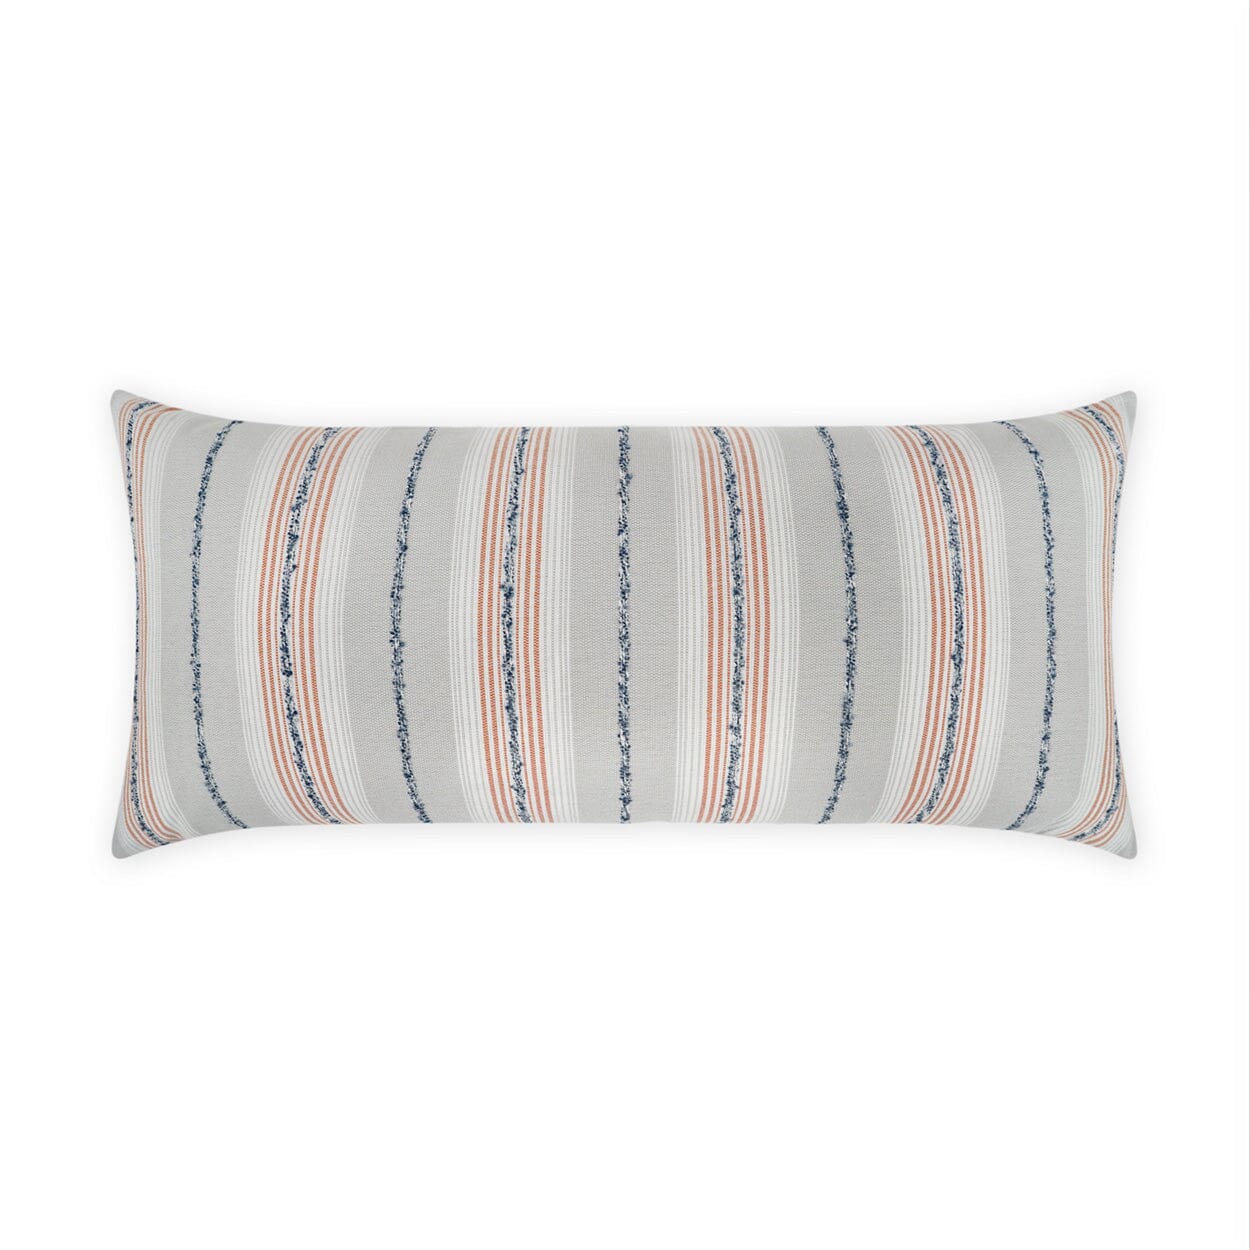 D.V. Kap 12" x 24" Outdoor Lumbar Pillow | Sunkist Coral Pillows D.V Kap Home